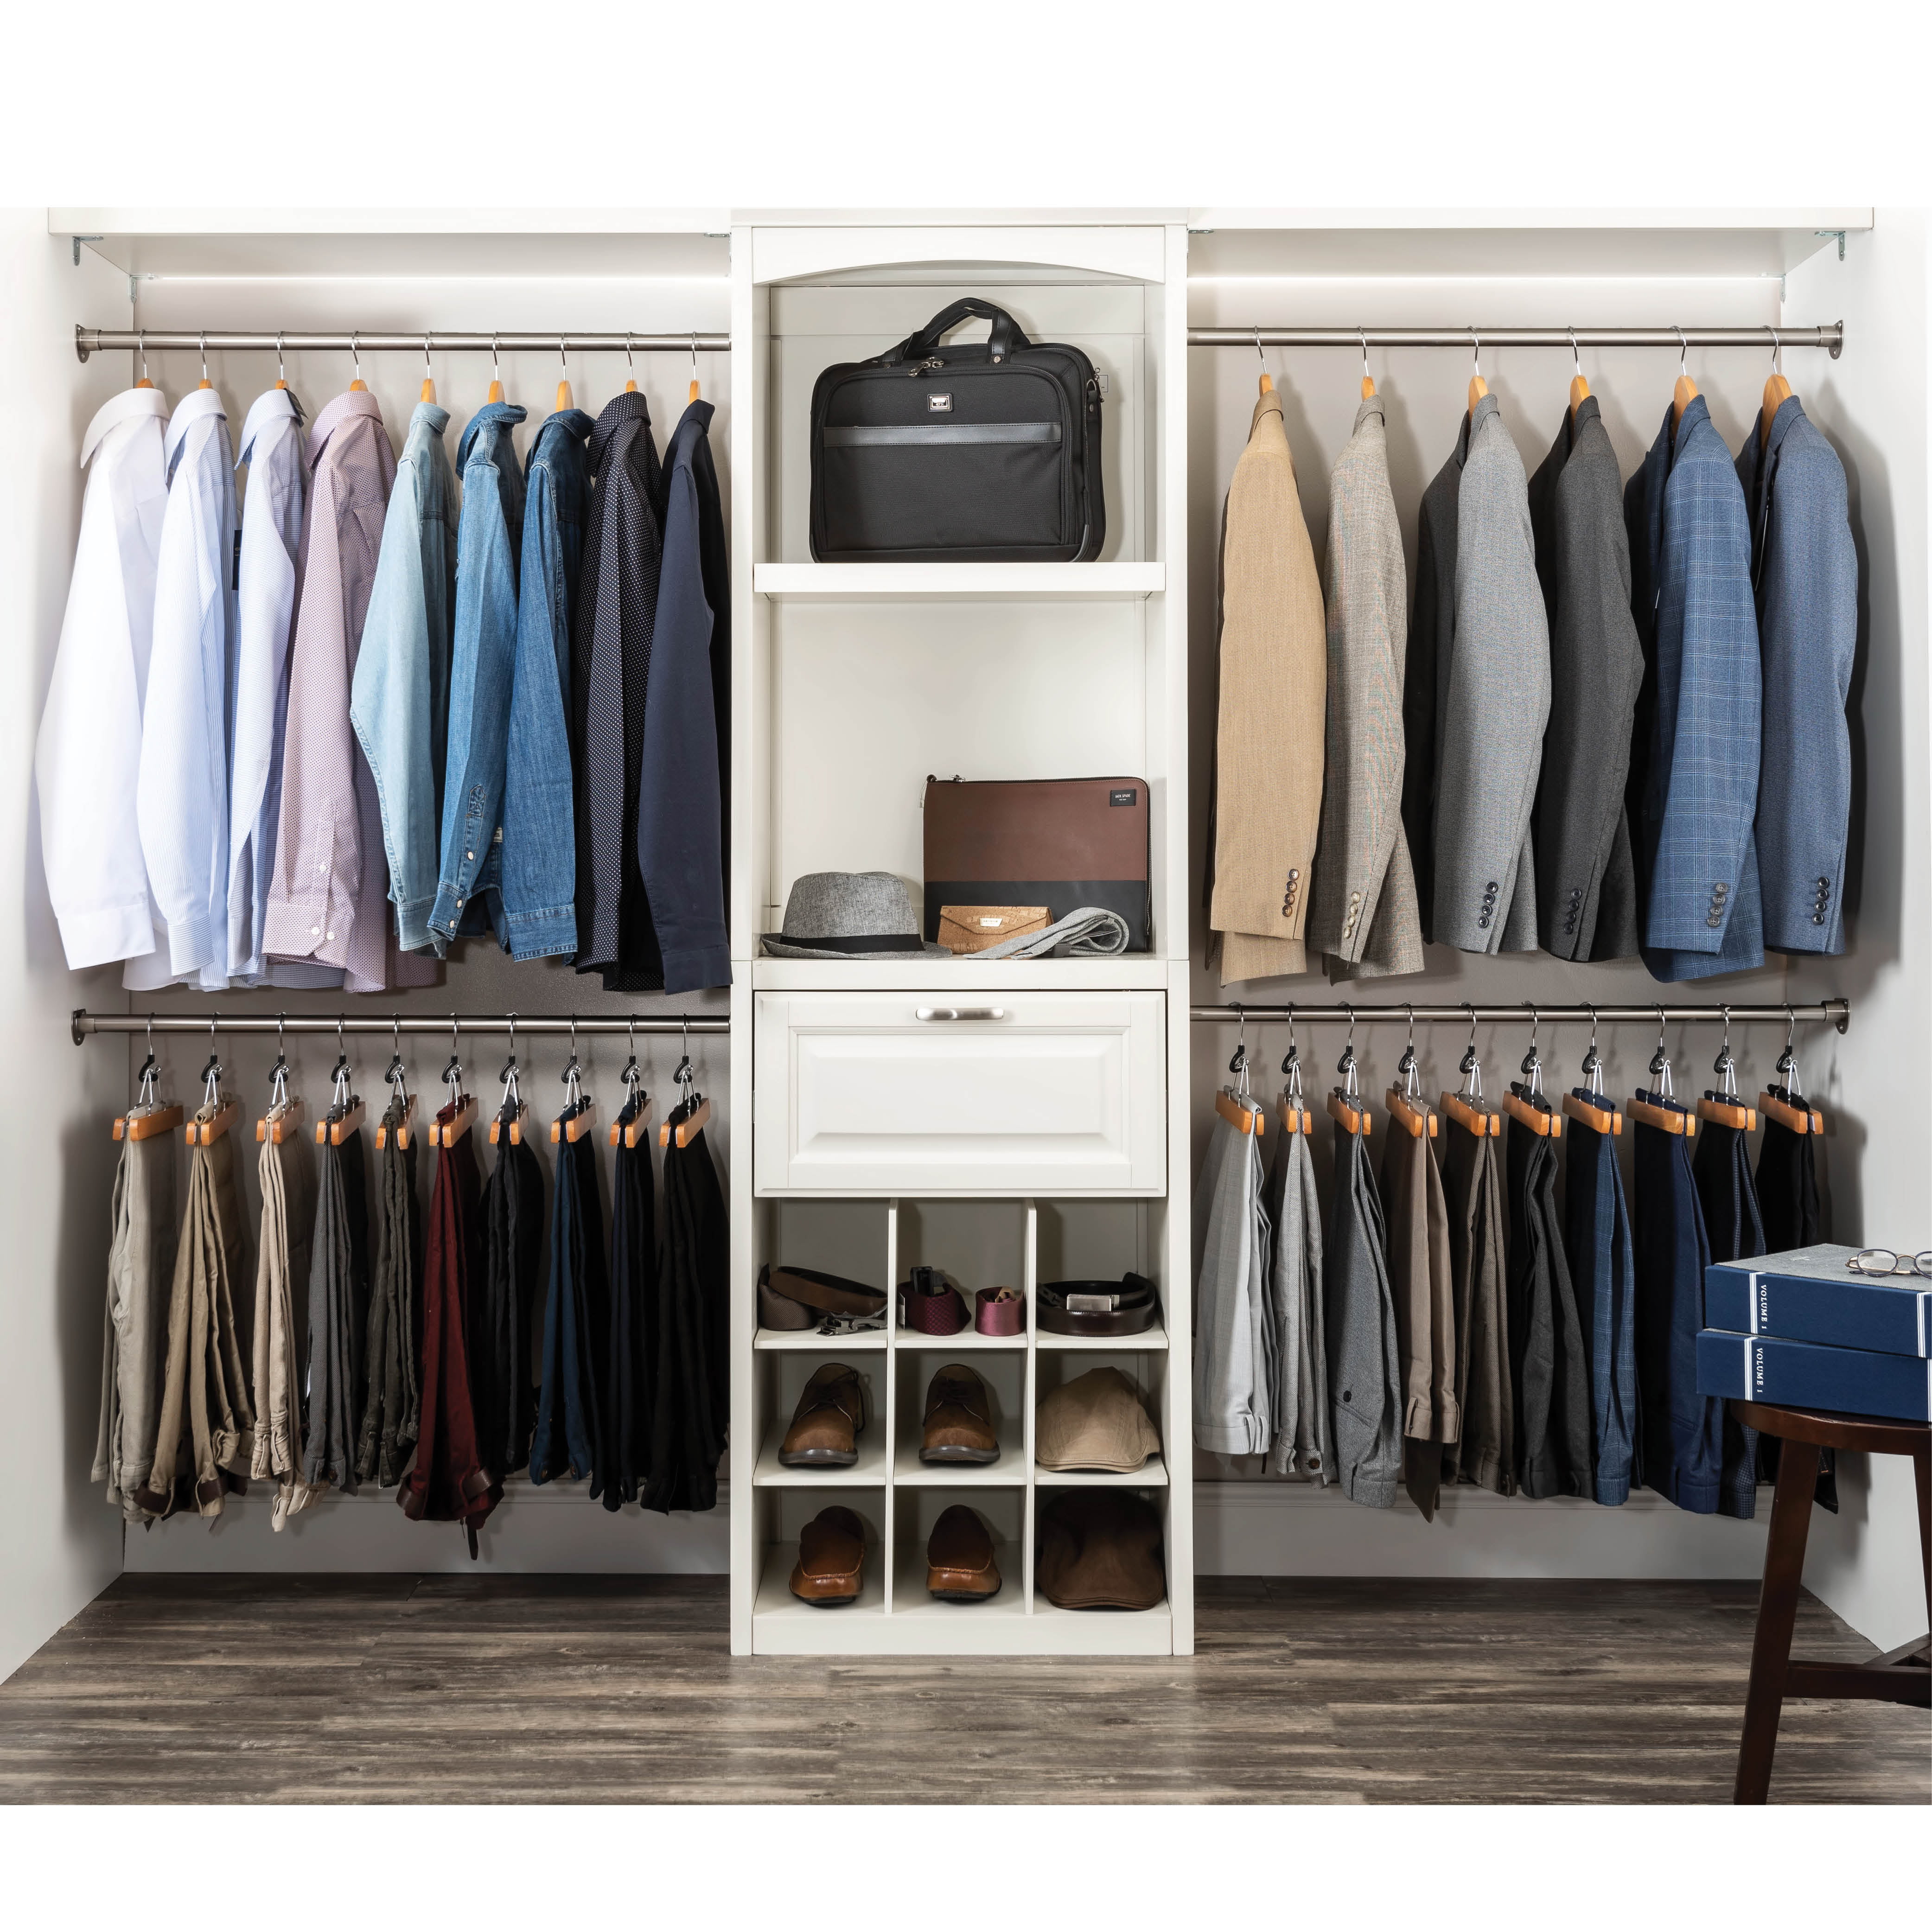 20 White Wooden Coat Hangers Suit Garments Clothes Trouser Hanger Bar Notches 